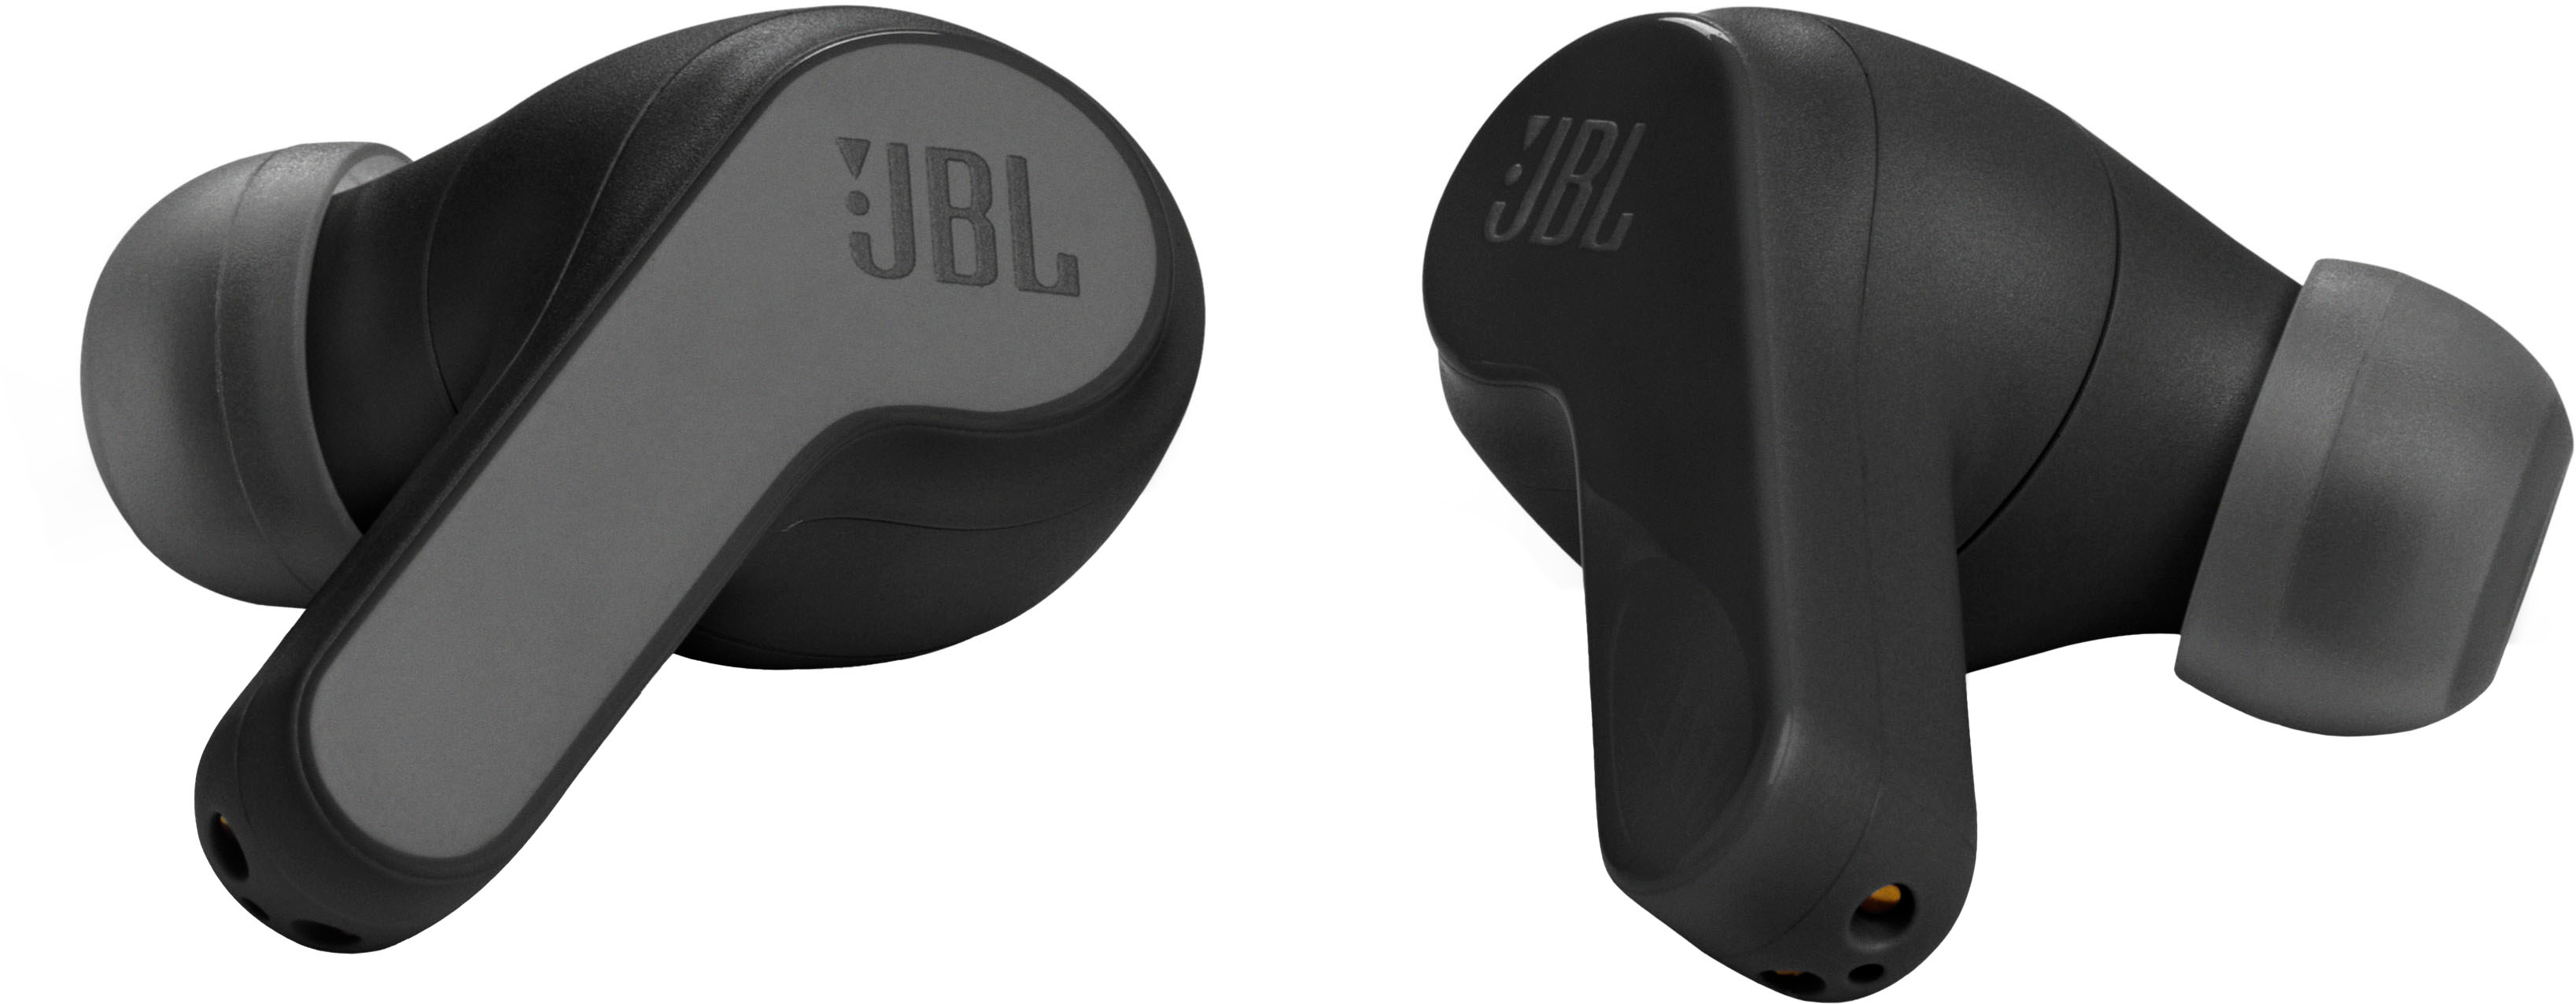  JBL Vibe 200TWS True Wireless Earbuds - Blue : Electronics